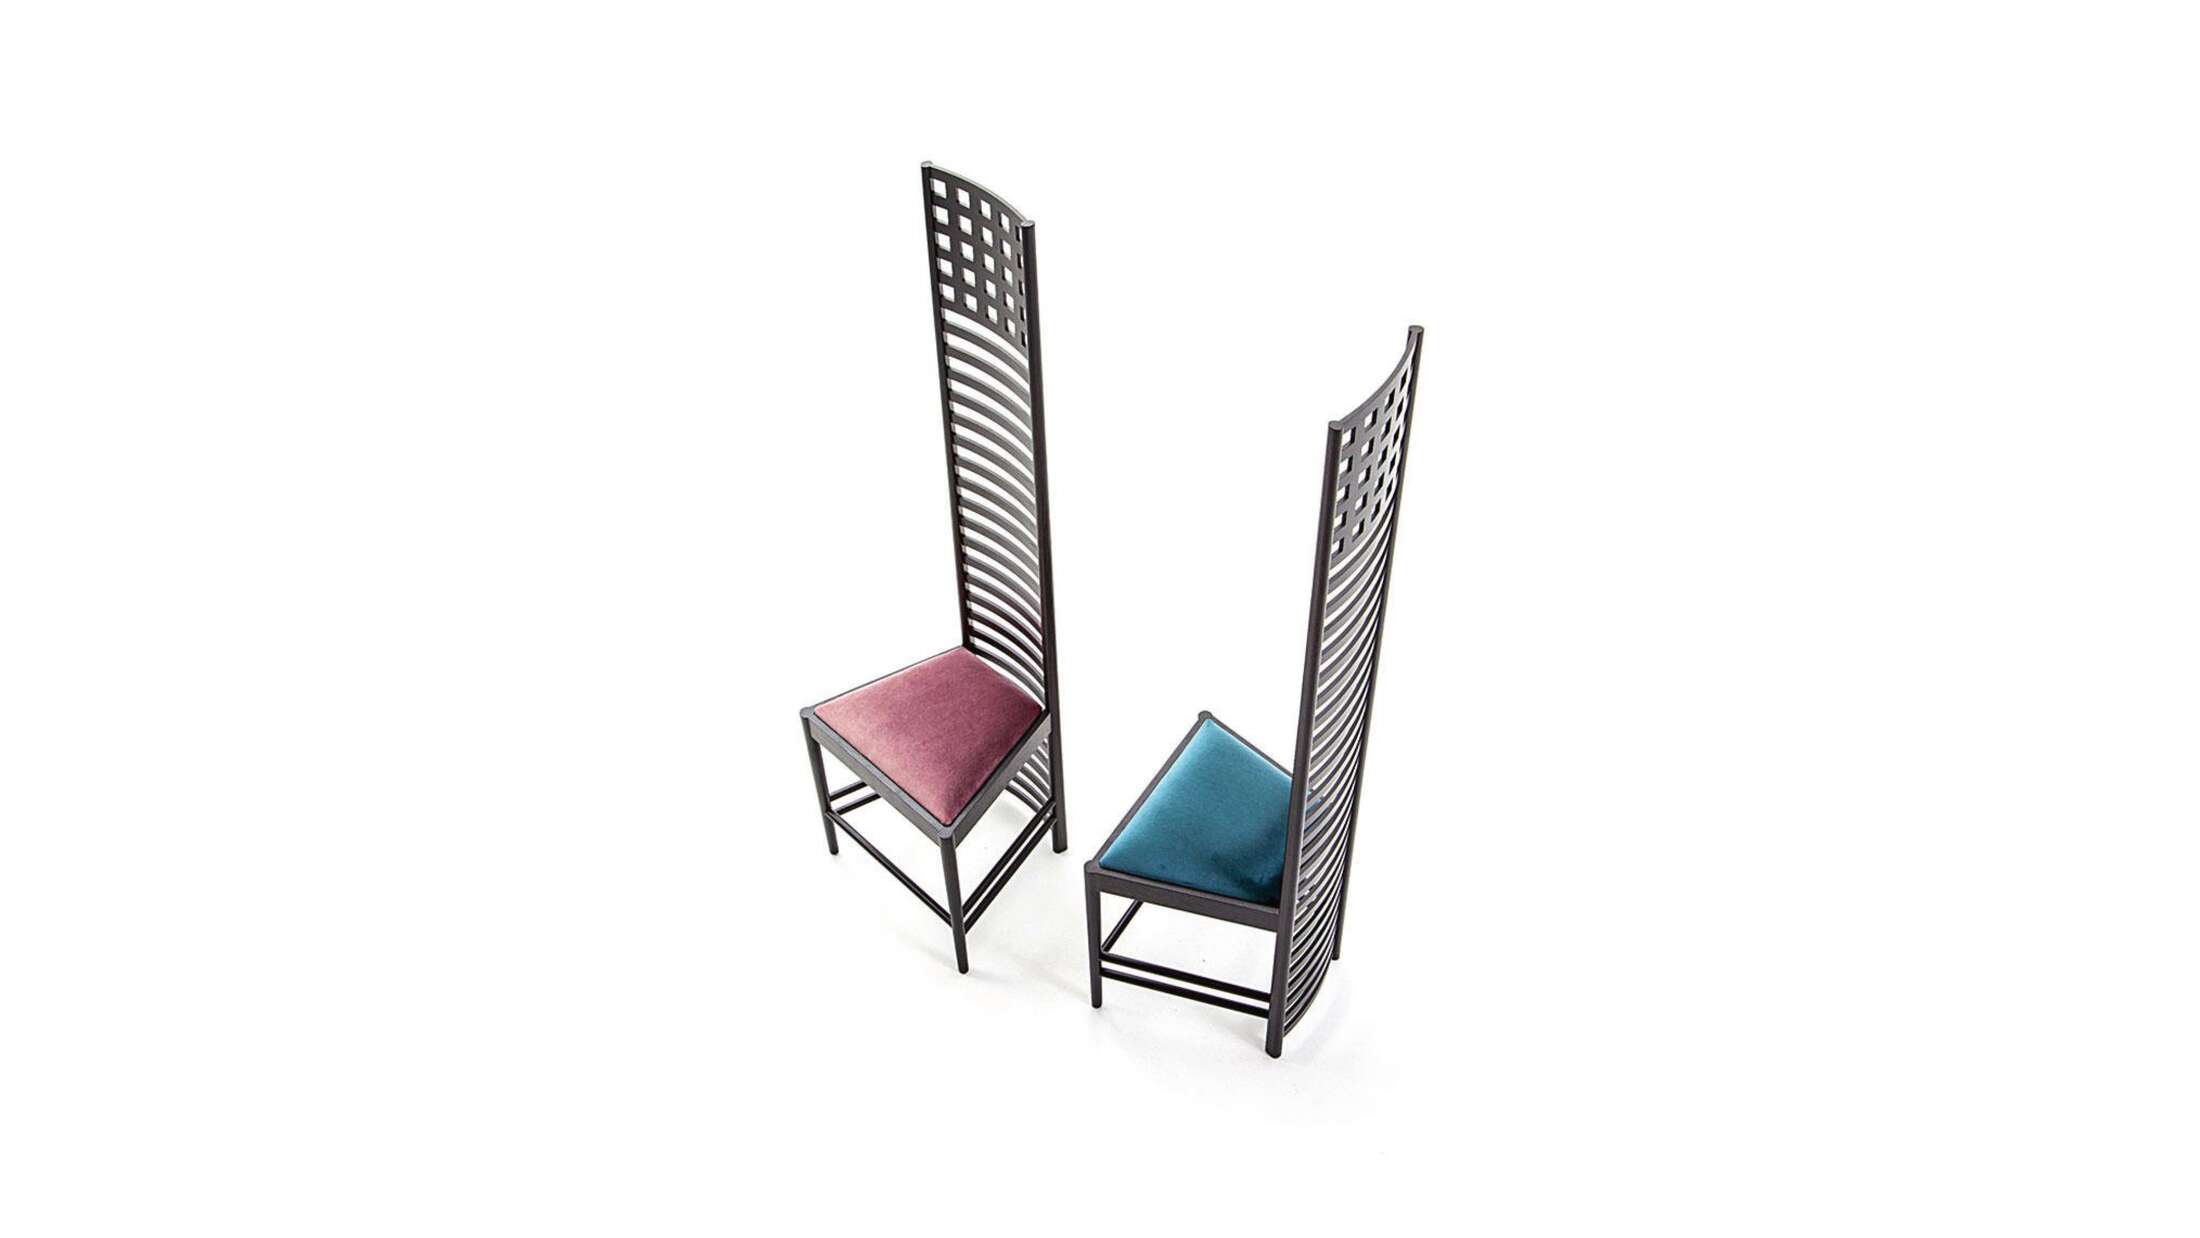 Chaise conçue par Charles Rennie Mackintosh en 1902. Relancé en 1973. Fabriqué par Cassina en Italie. Les prix varient en fonction de la couleur et du matériau de la pièce.

À l'origine, il s'agissait d'un accessoire d'ameublement pour l'un des